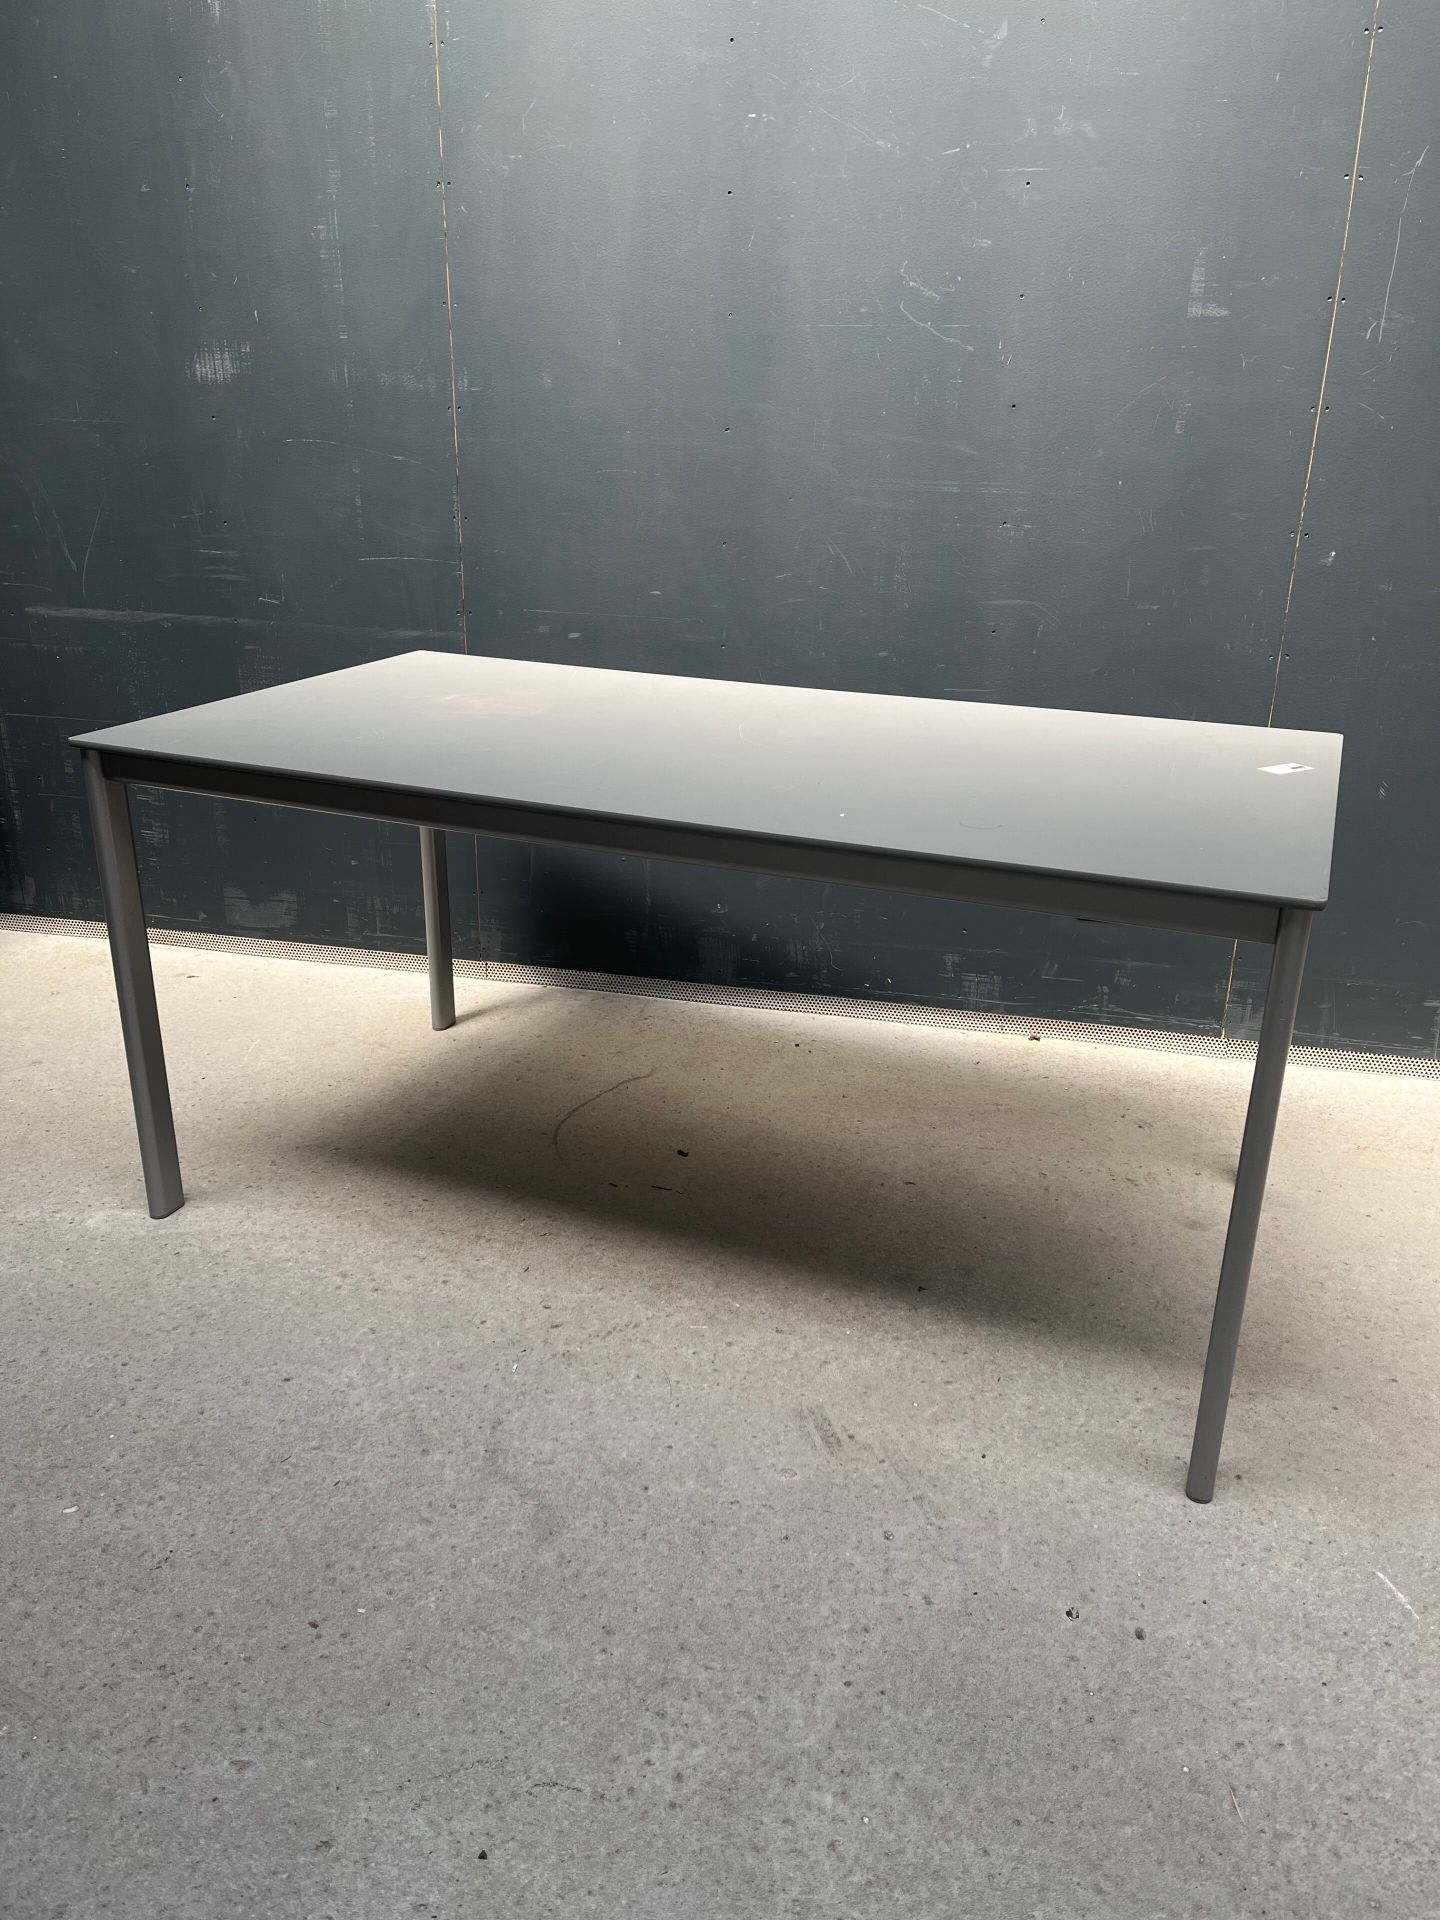 Null 灰色阳极氧化金属长方形桌子

划痕和修复